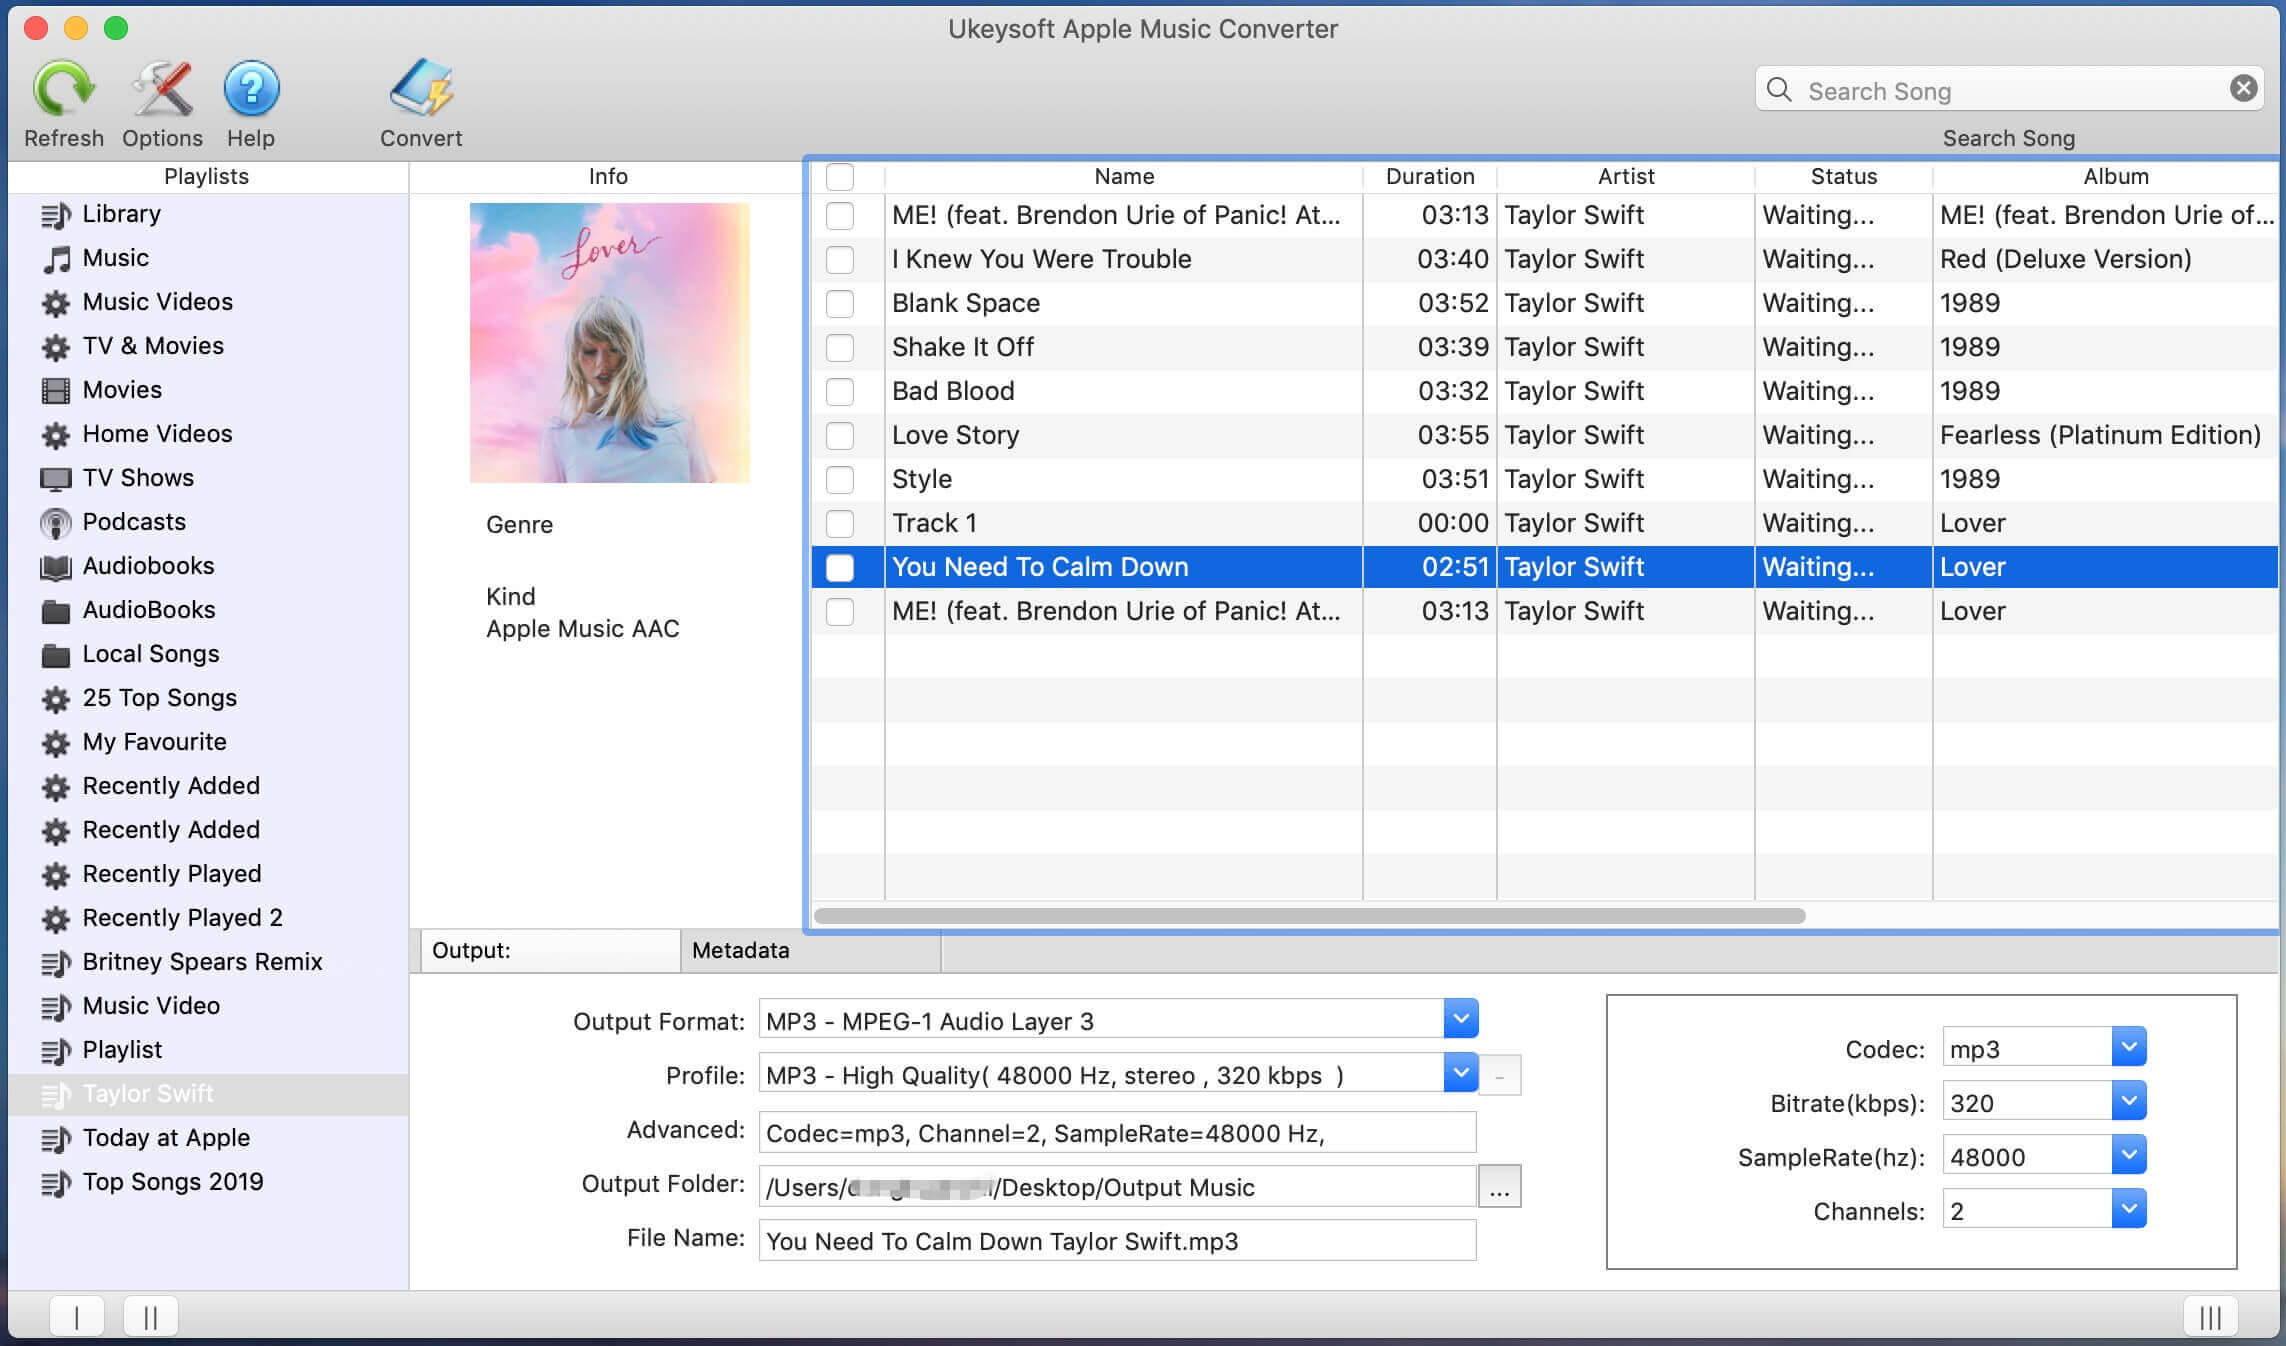 Start UkeySoft Apple Music Converter